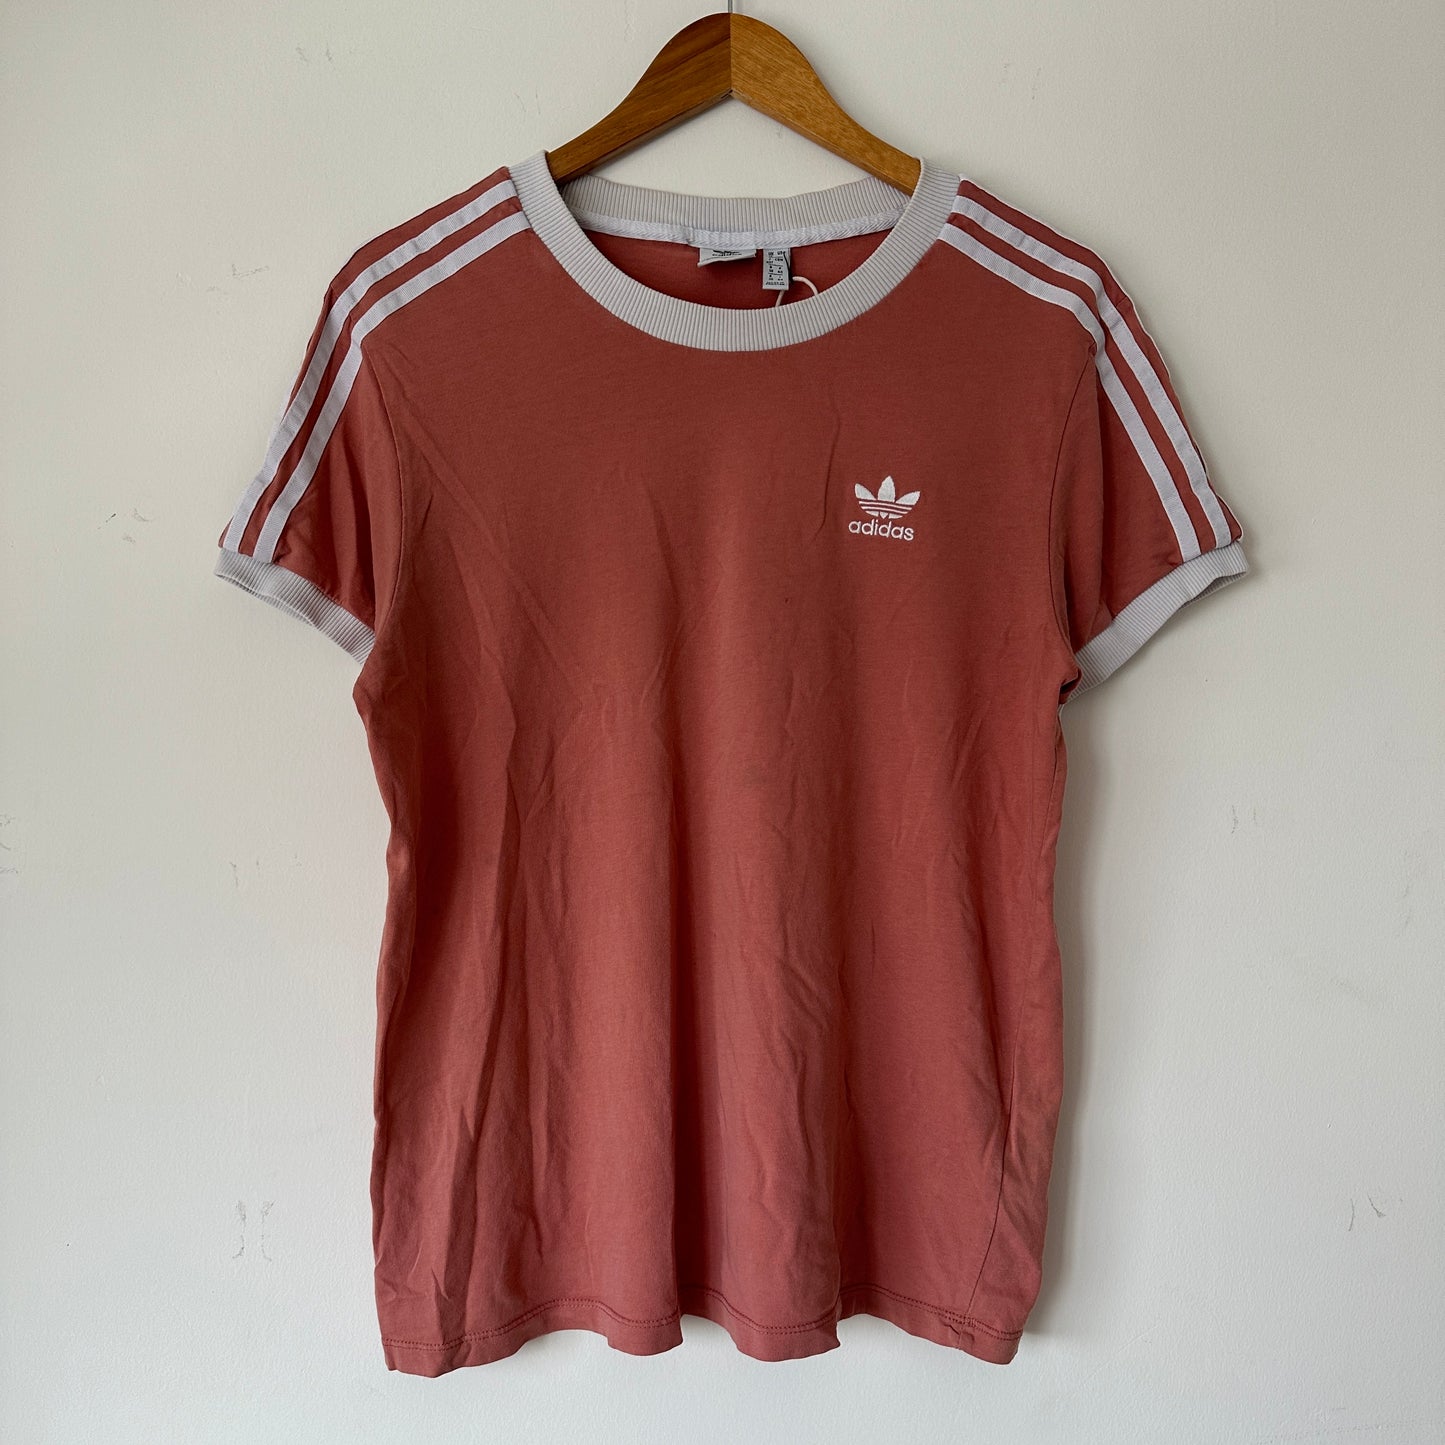 Adidas Original 2017 3-stripes brand Rose T-shirt